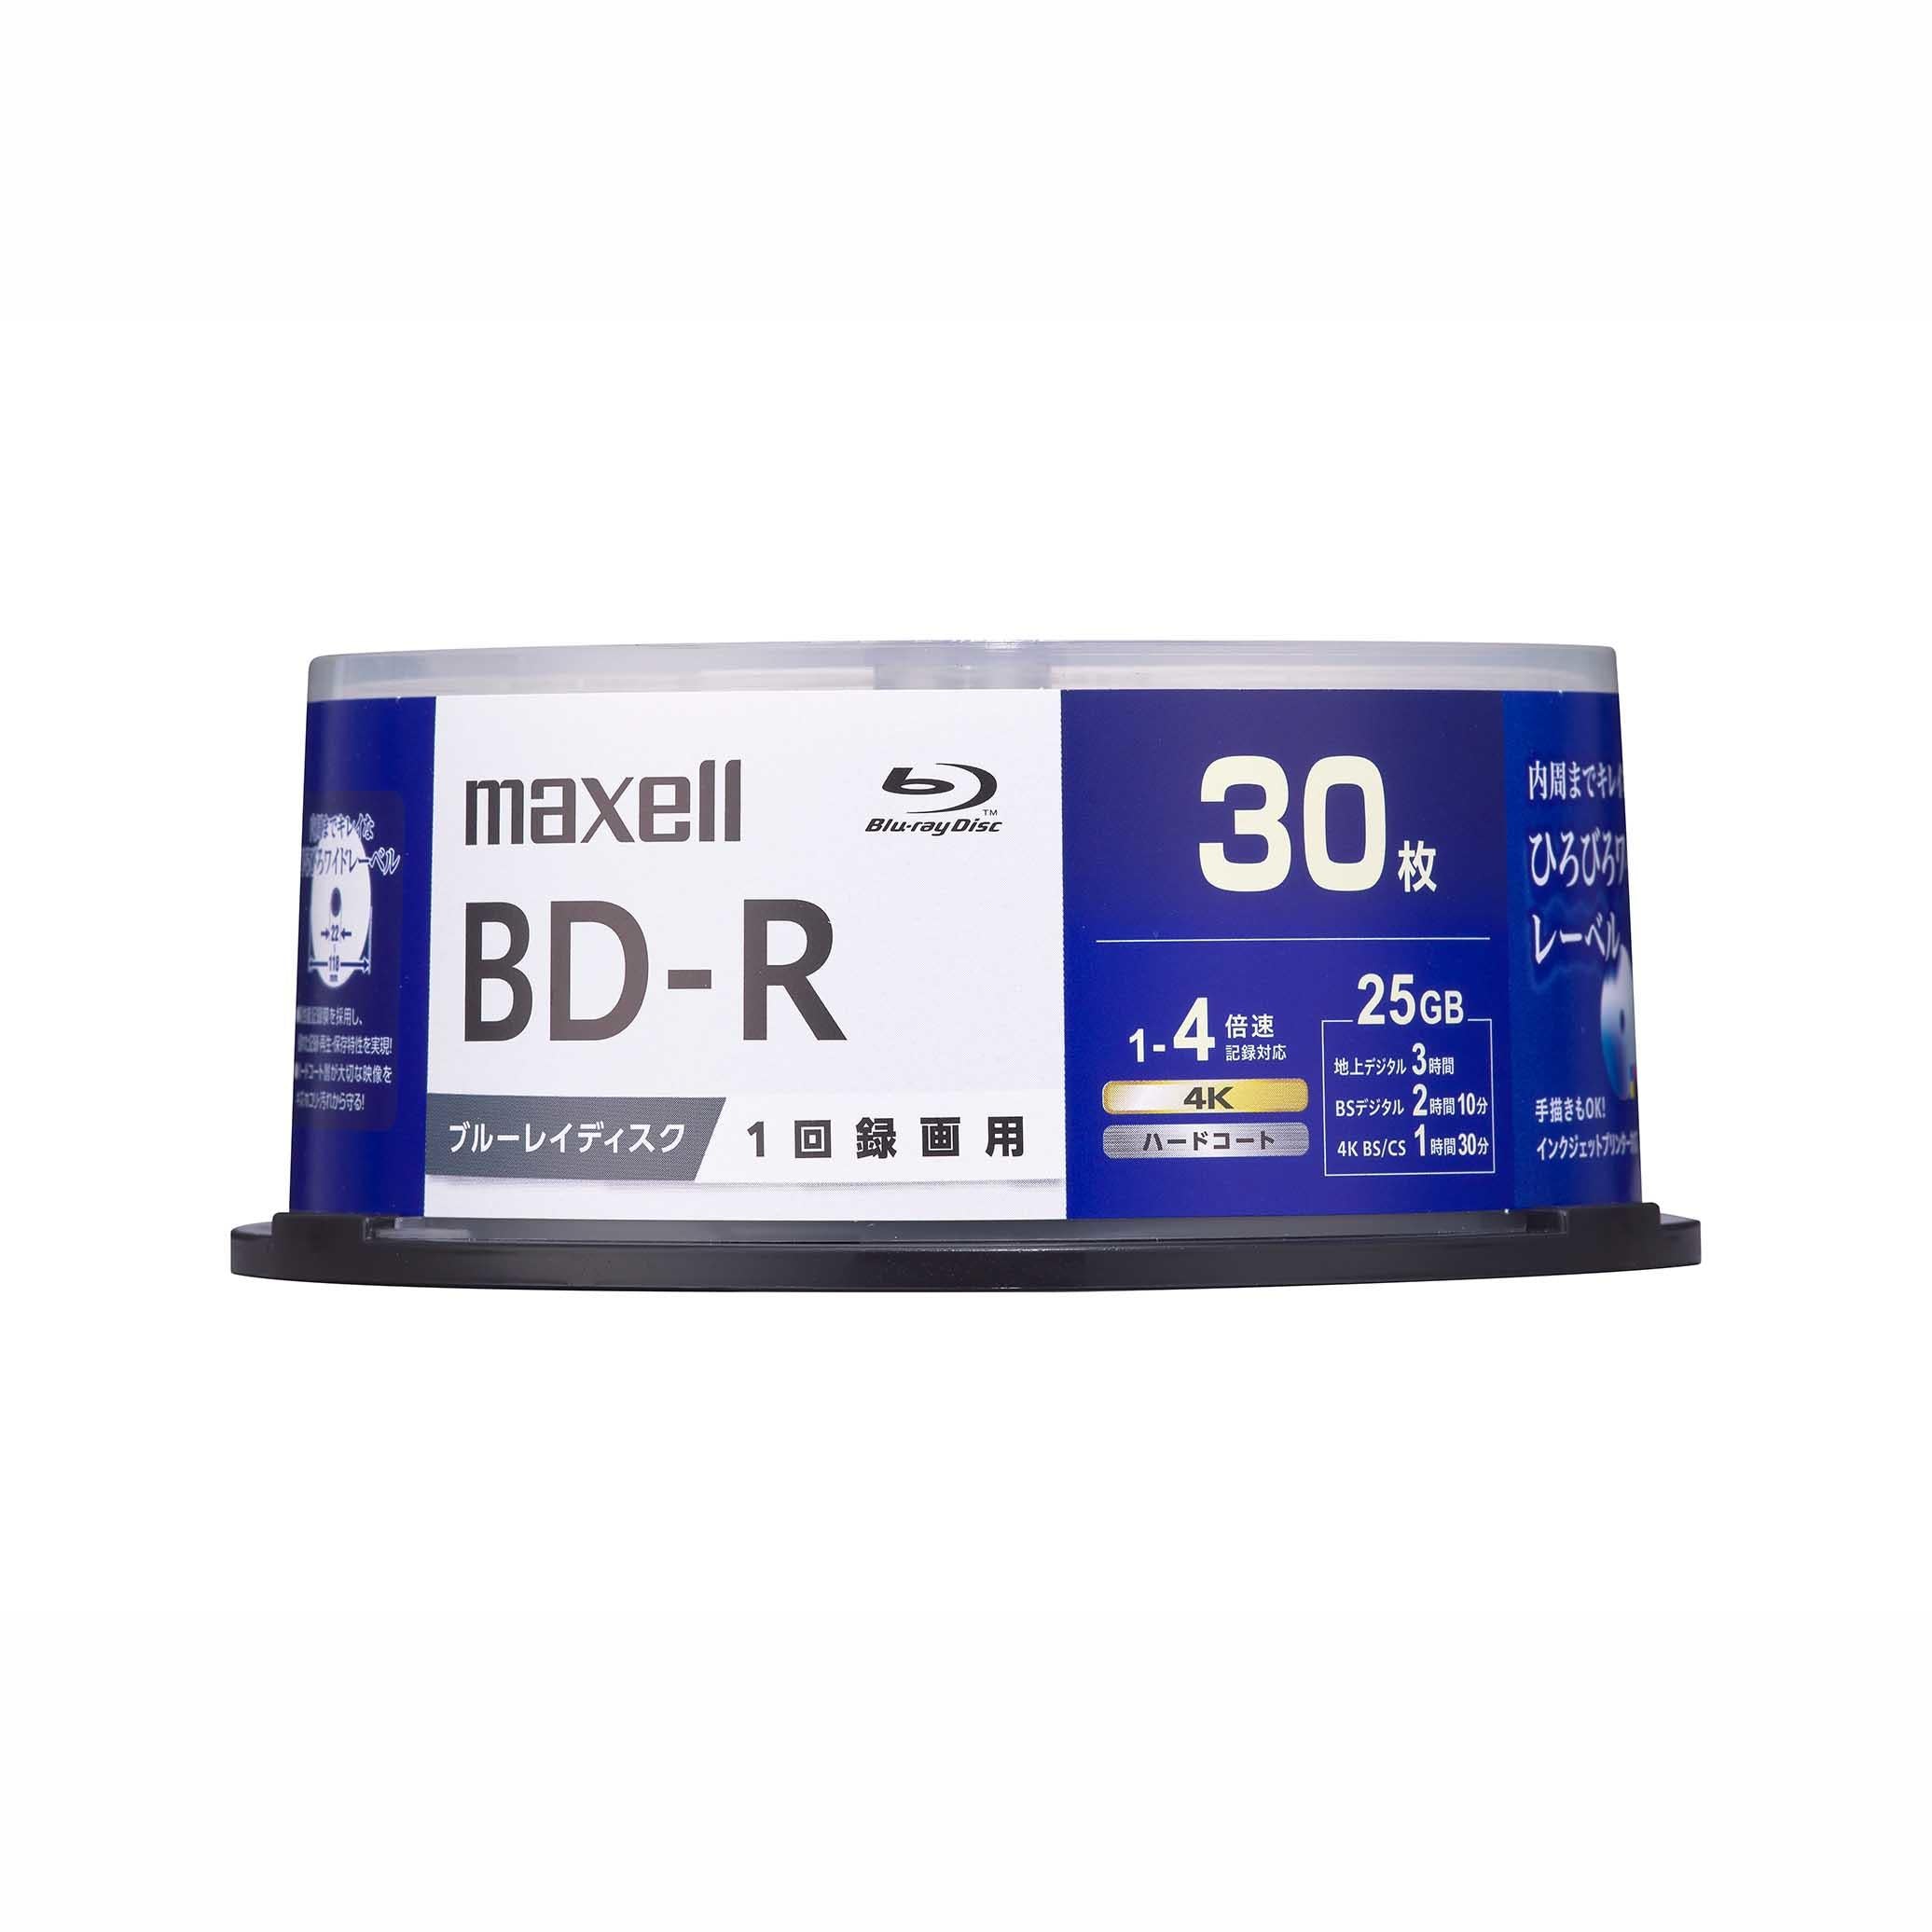 マクセル 録画用 ブルーレイディスク BD-R ひろびろワイドレーベルディスク (1～4倍速対応) 30枚入り スピンドルケース  BRV25WPG.30SP